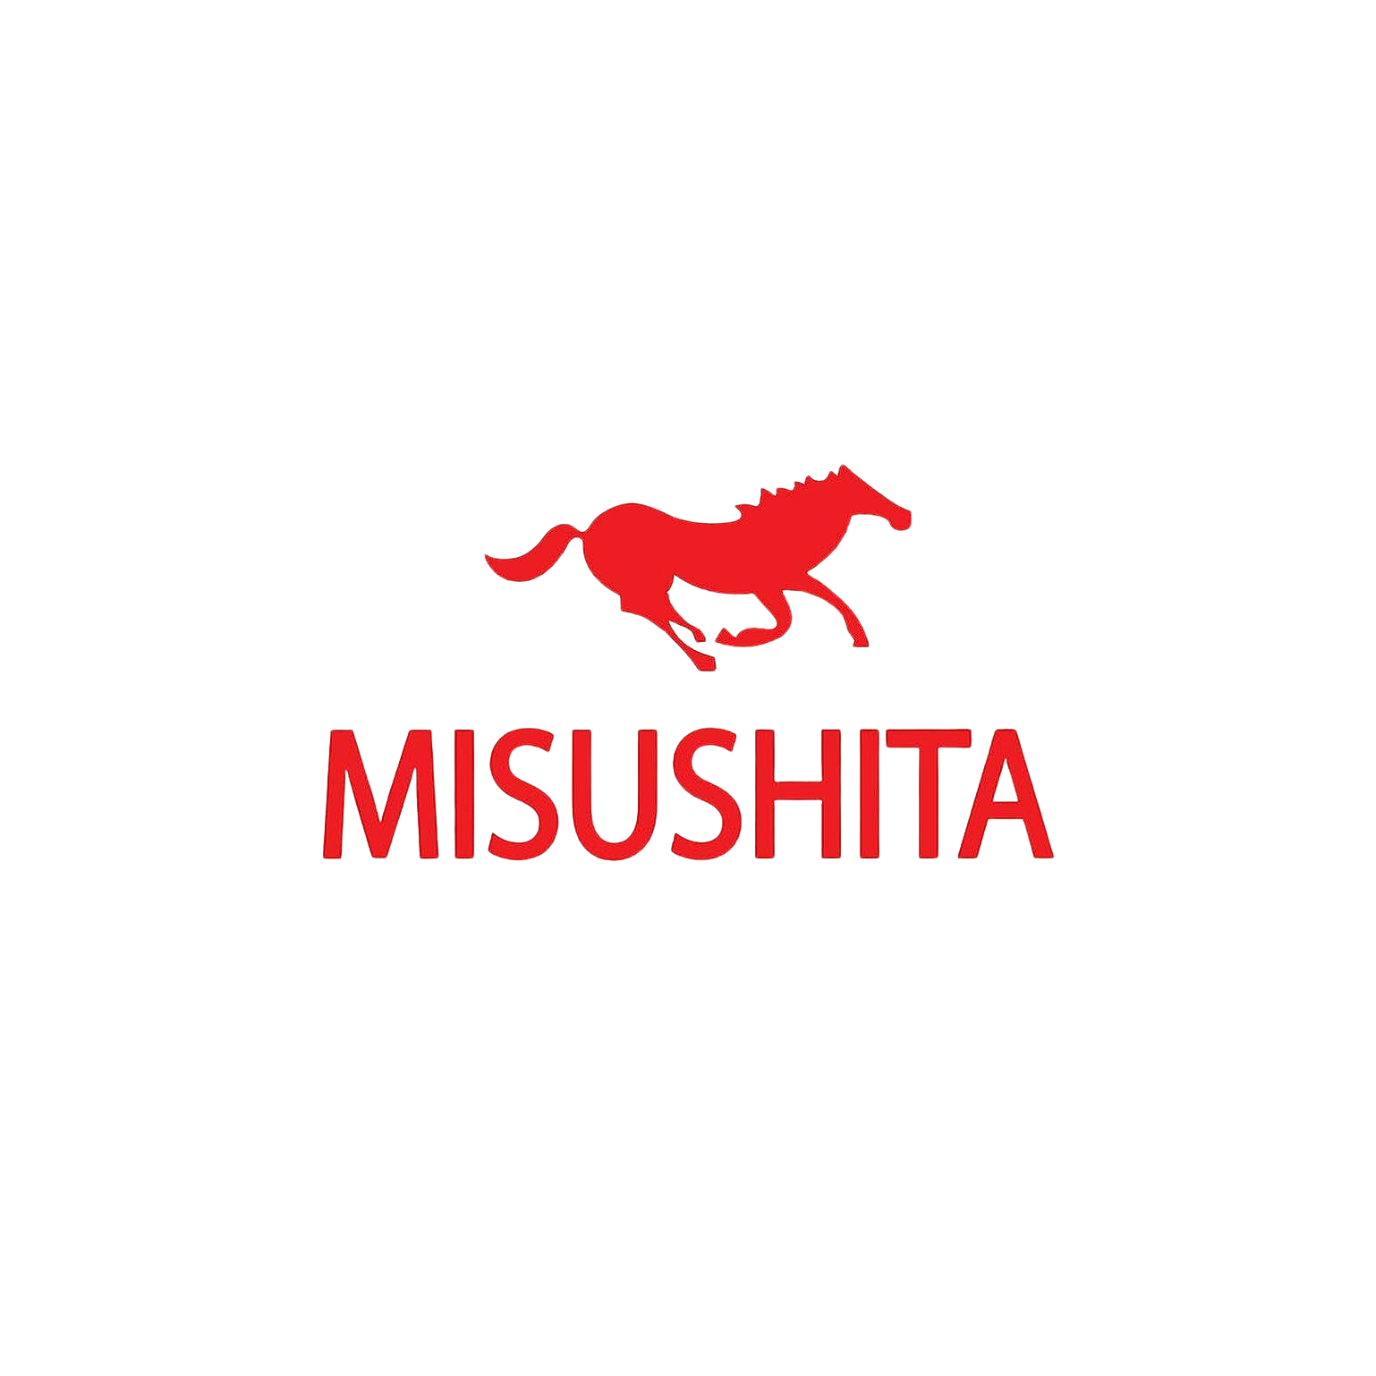 Misushita